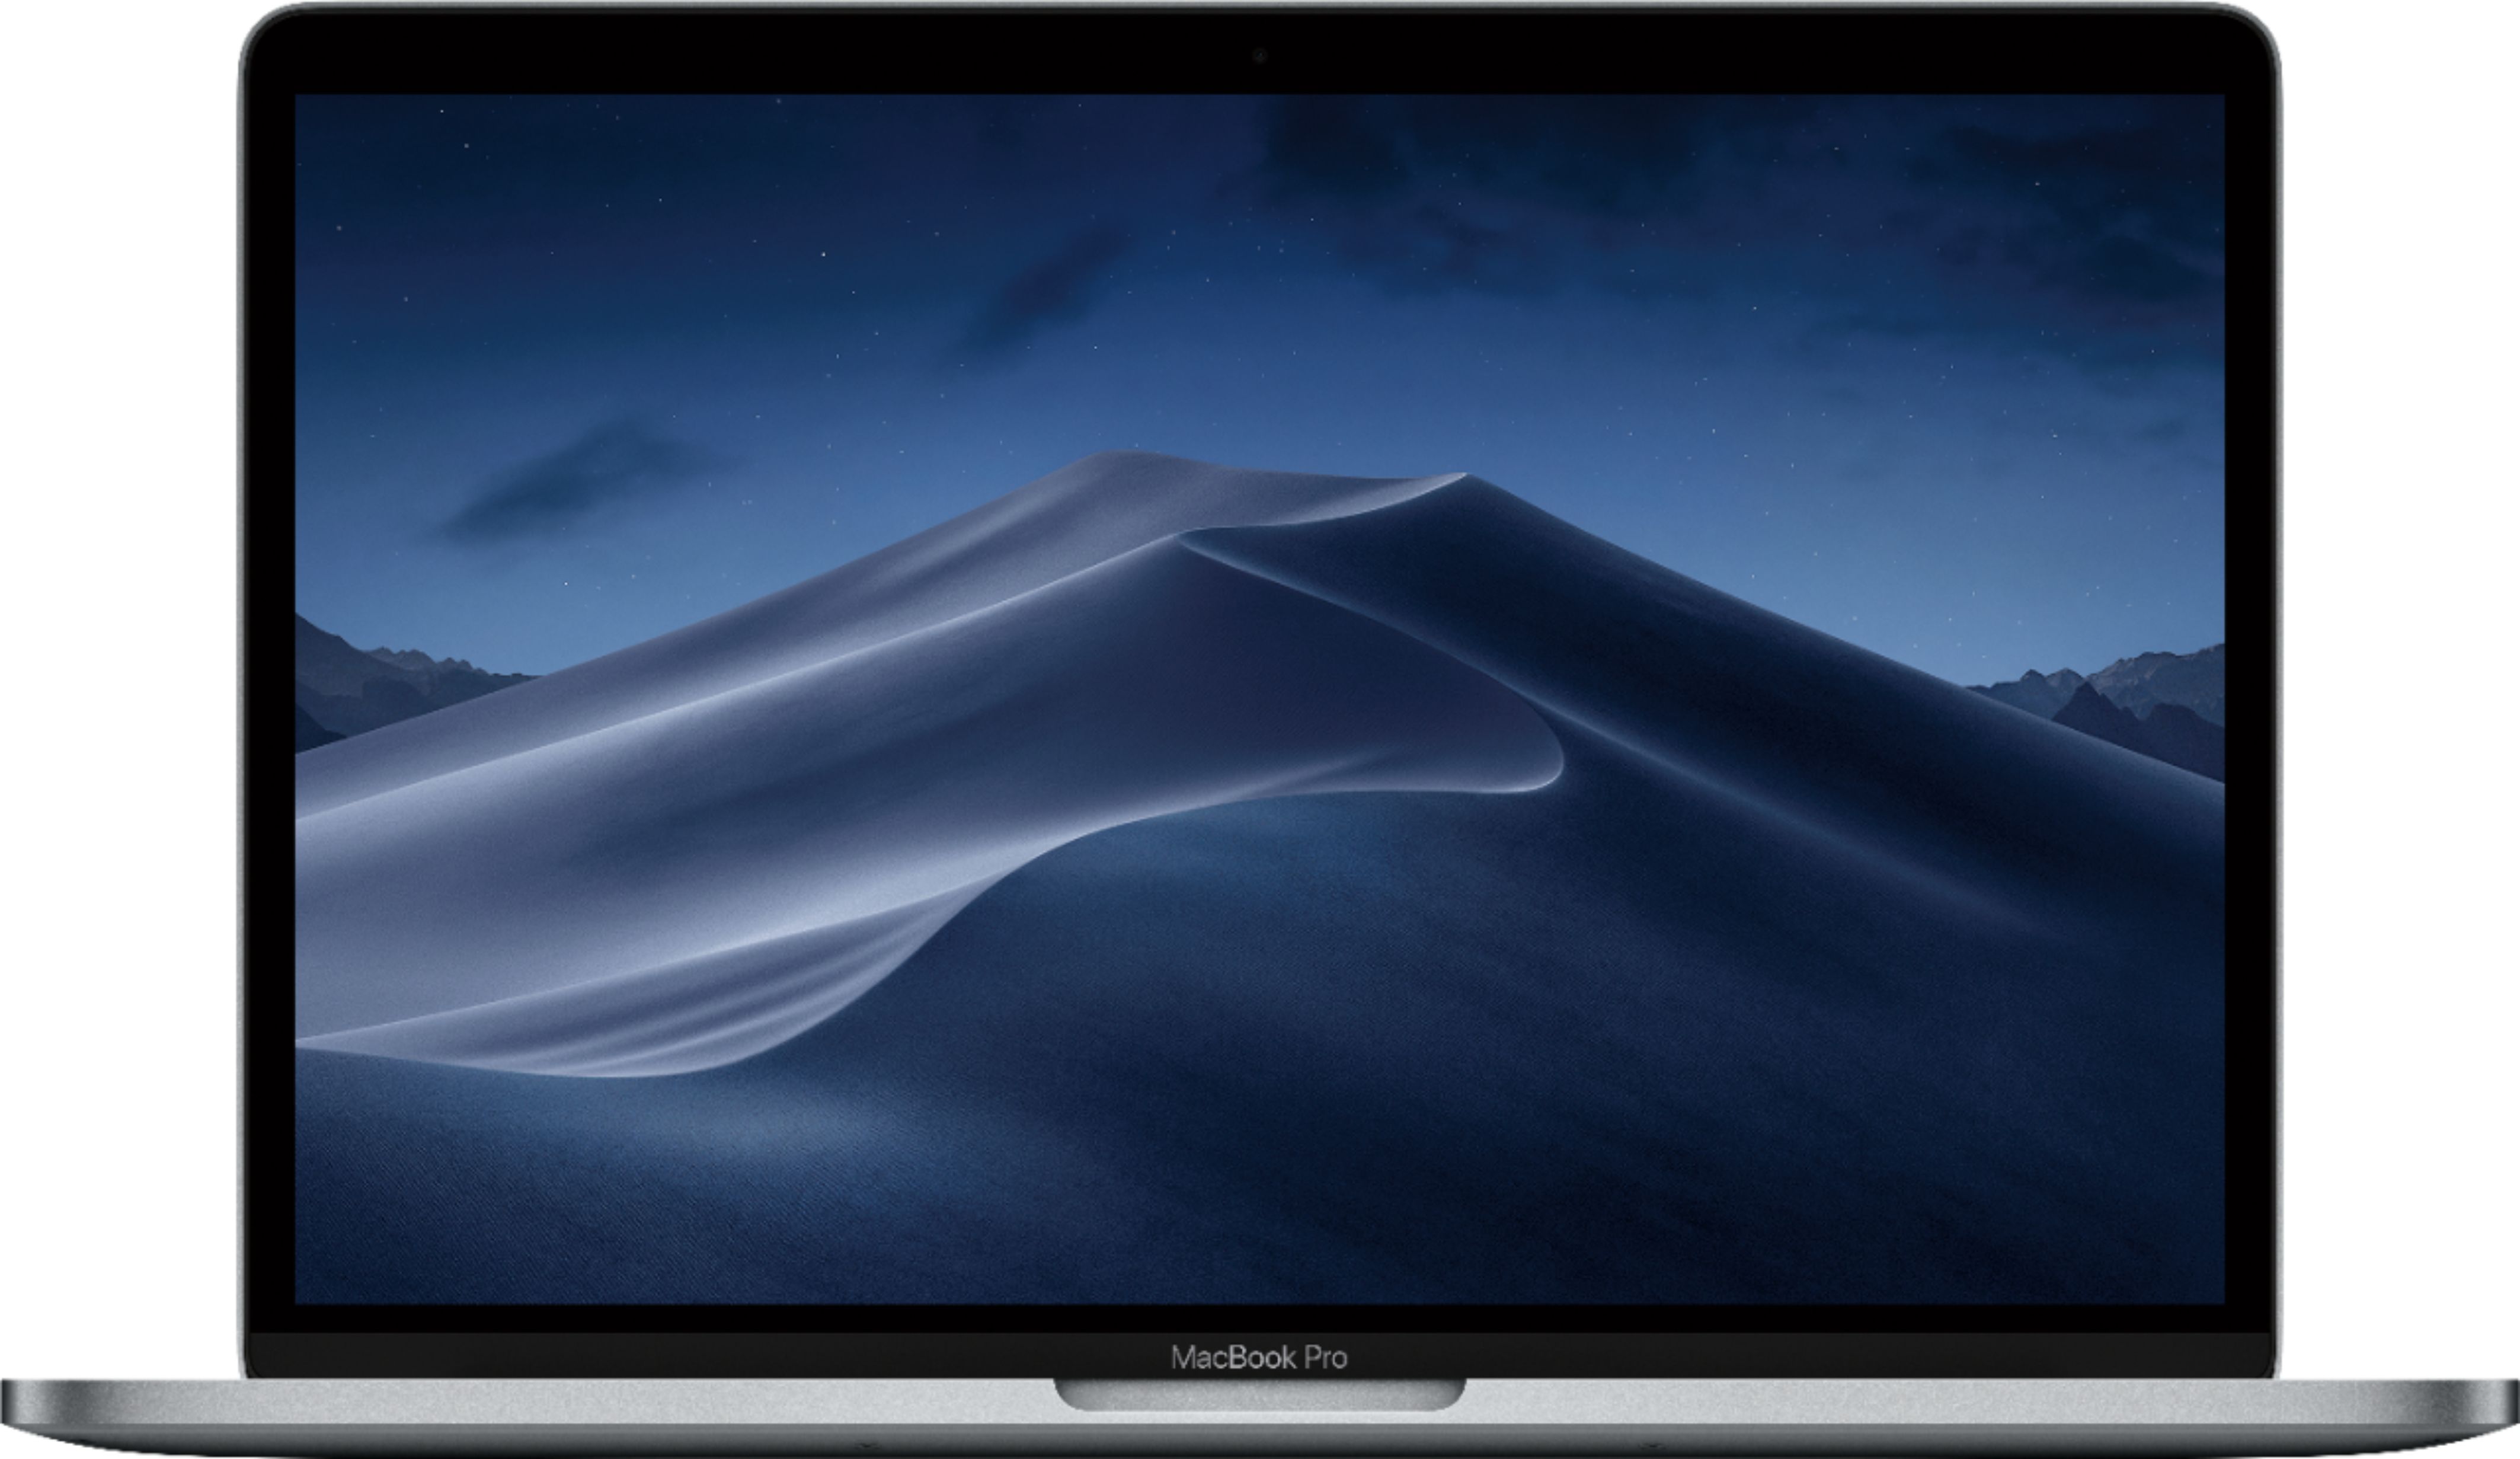 PC/タブレット ノートPC Apple MacBook Pro 13